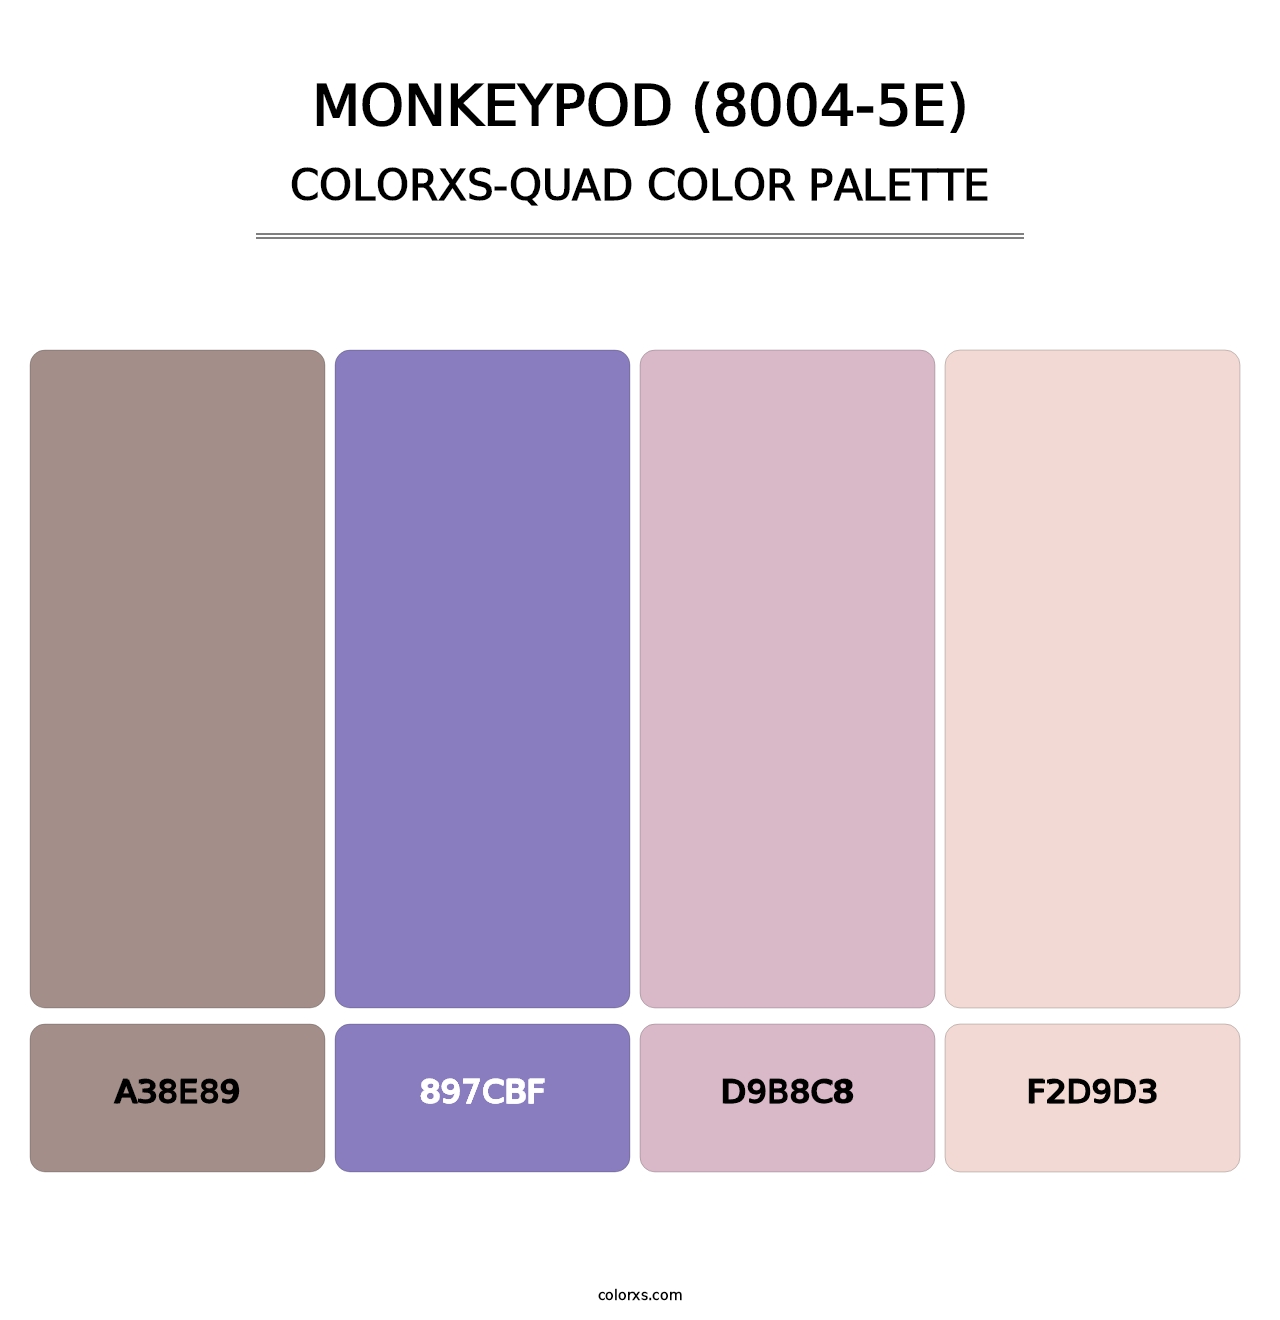 Monkeypod (8004-5E) - Colorxs Quad Palette